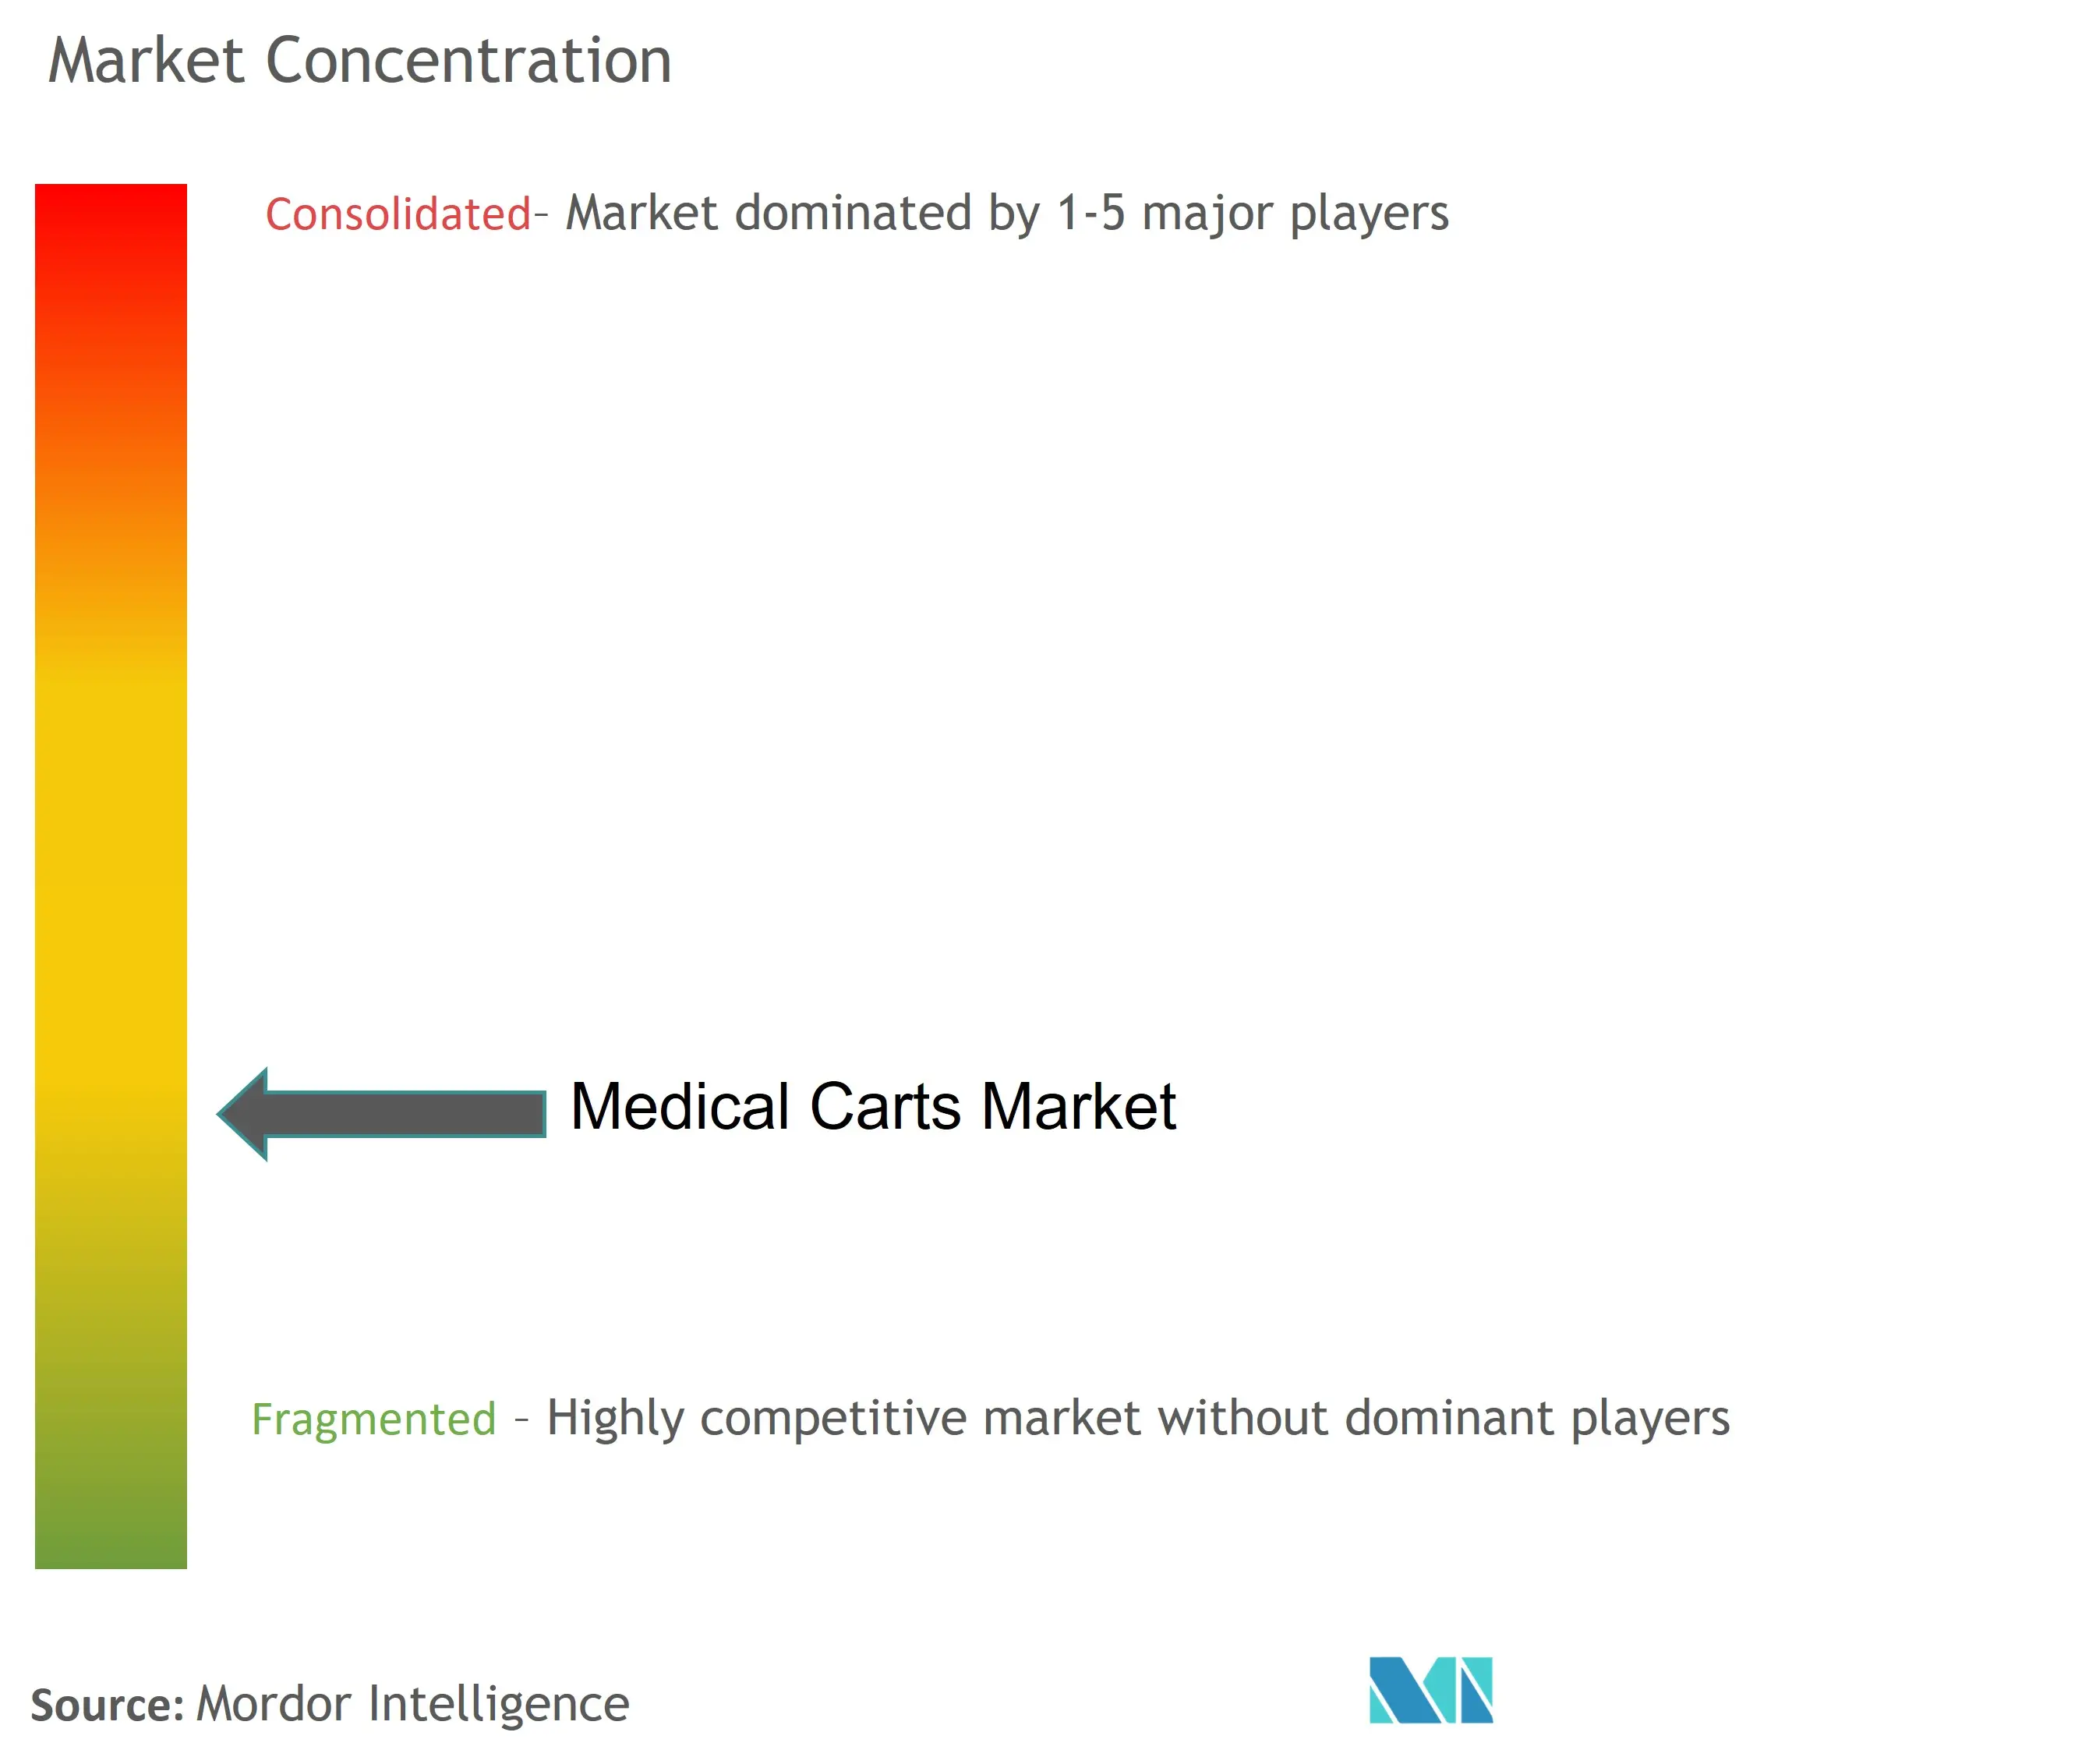 Medical Carts Market Concentration